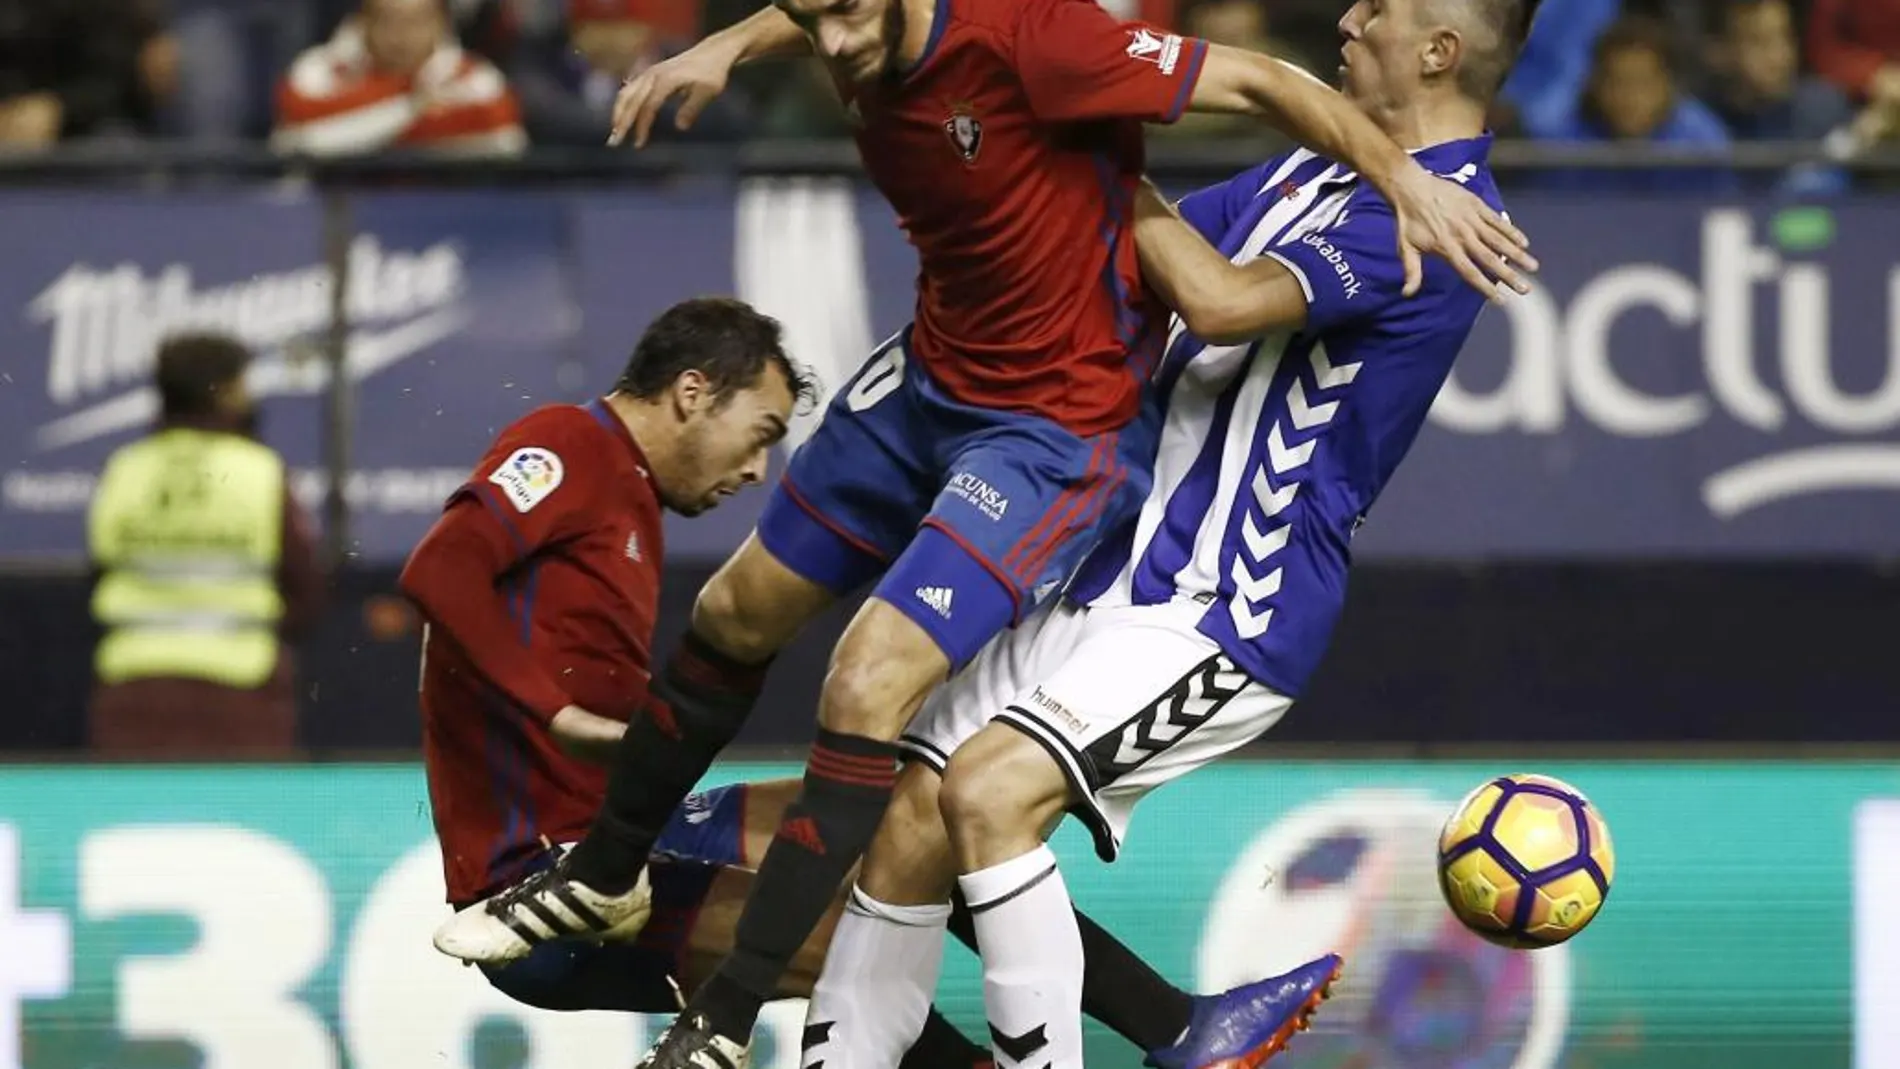 Los centrocampistas Miguel de las Cuevas y Roberto Torres, del Osasuna, intentan arrebatar el esférico al centrocampista del Deportivo Alavés, Víctor Camarasa